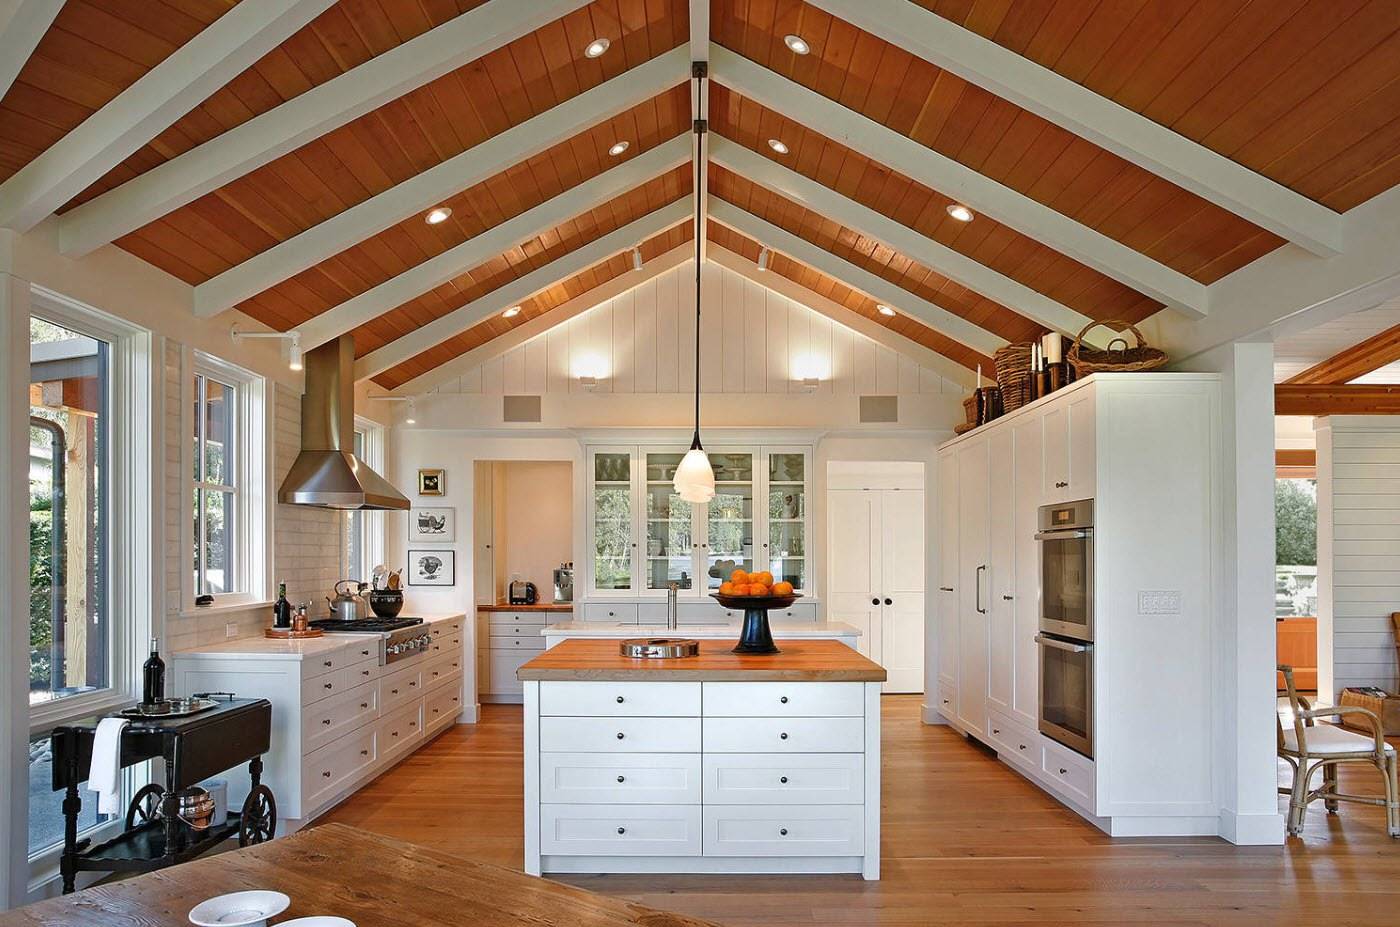 Как отделать потолок в деревянном доме?